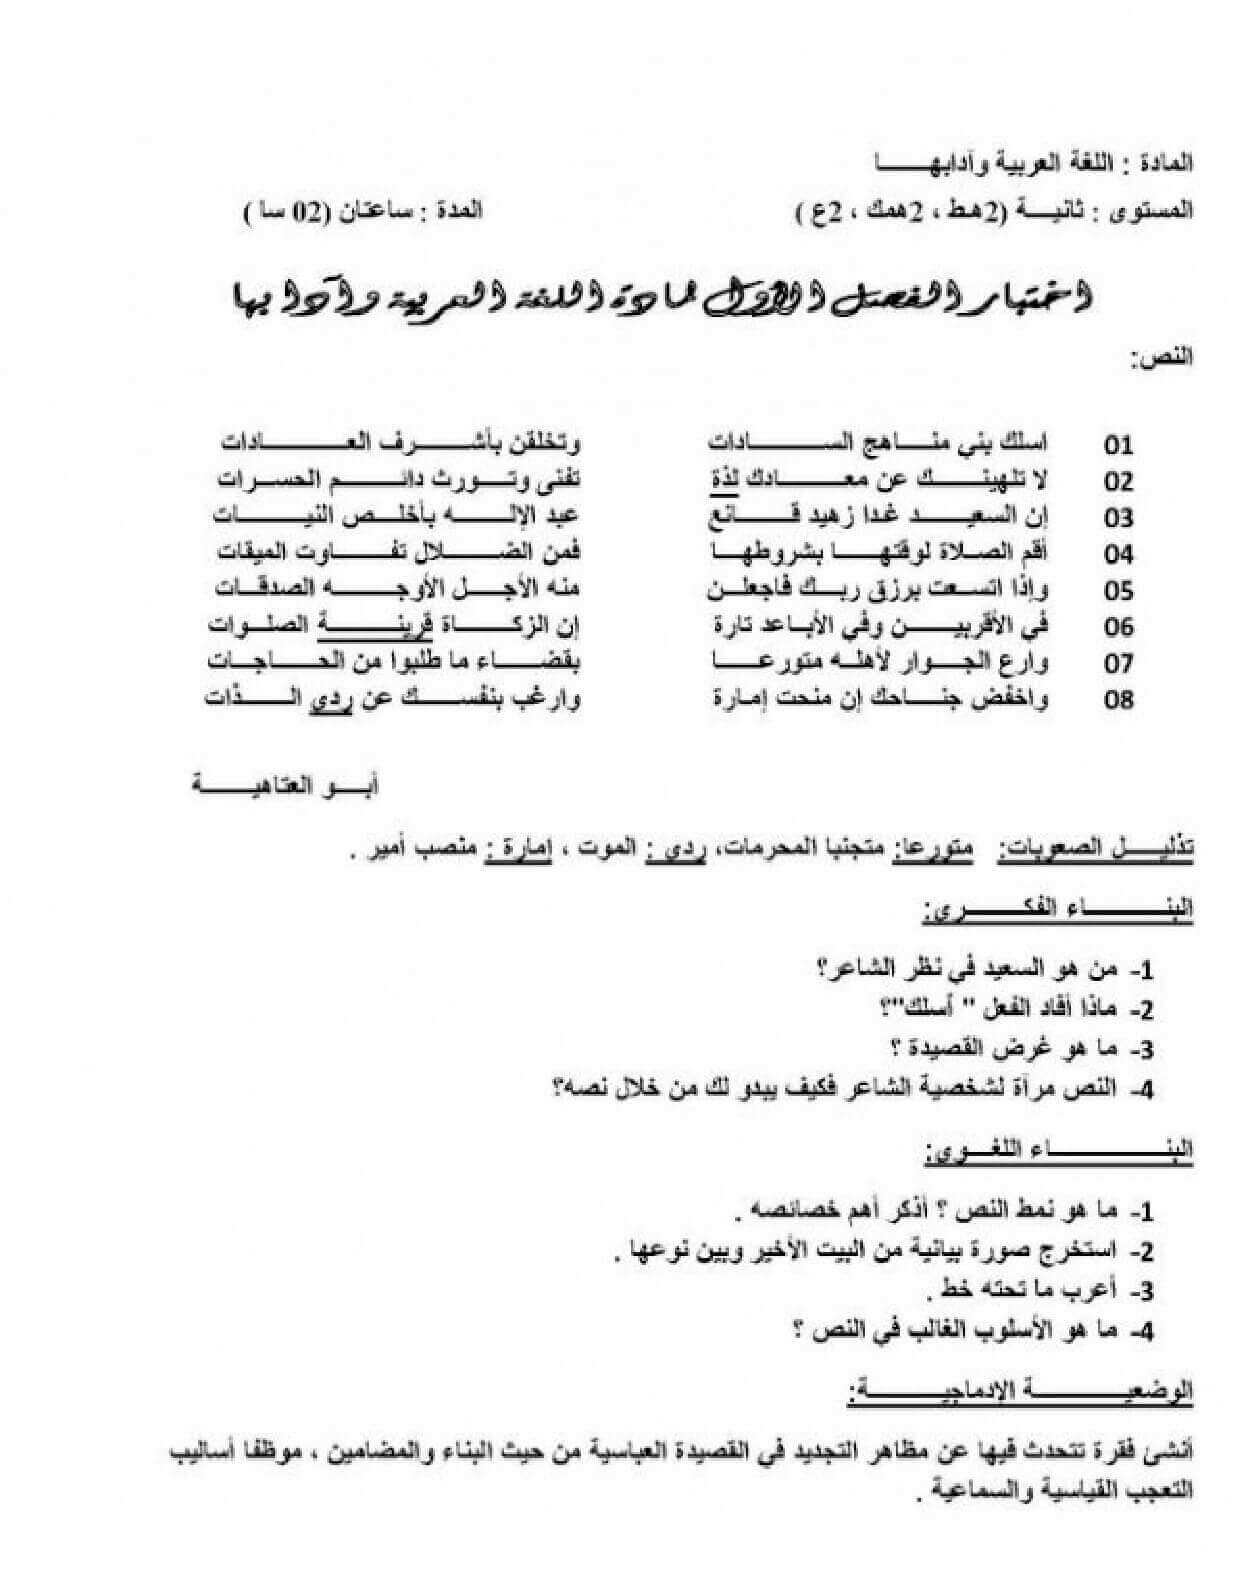 اختبار الفصل الأول في اللغة العربية للسنة ثانية ثانوي النموذج 10